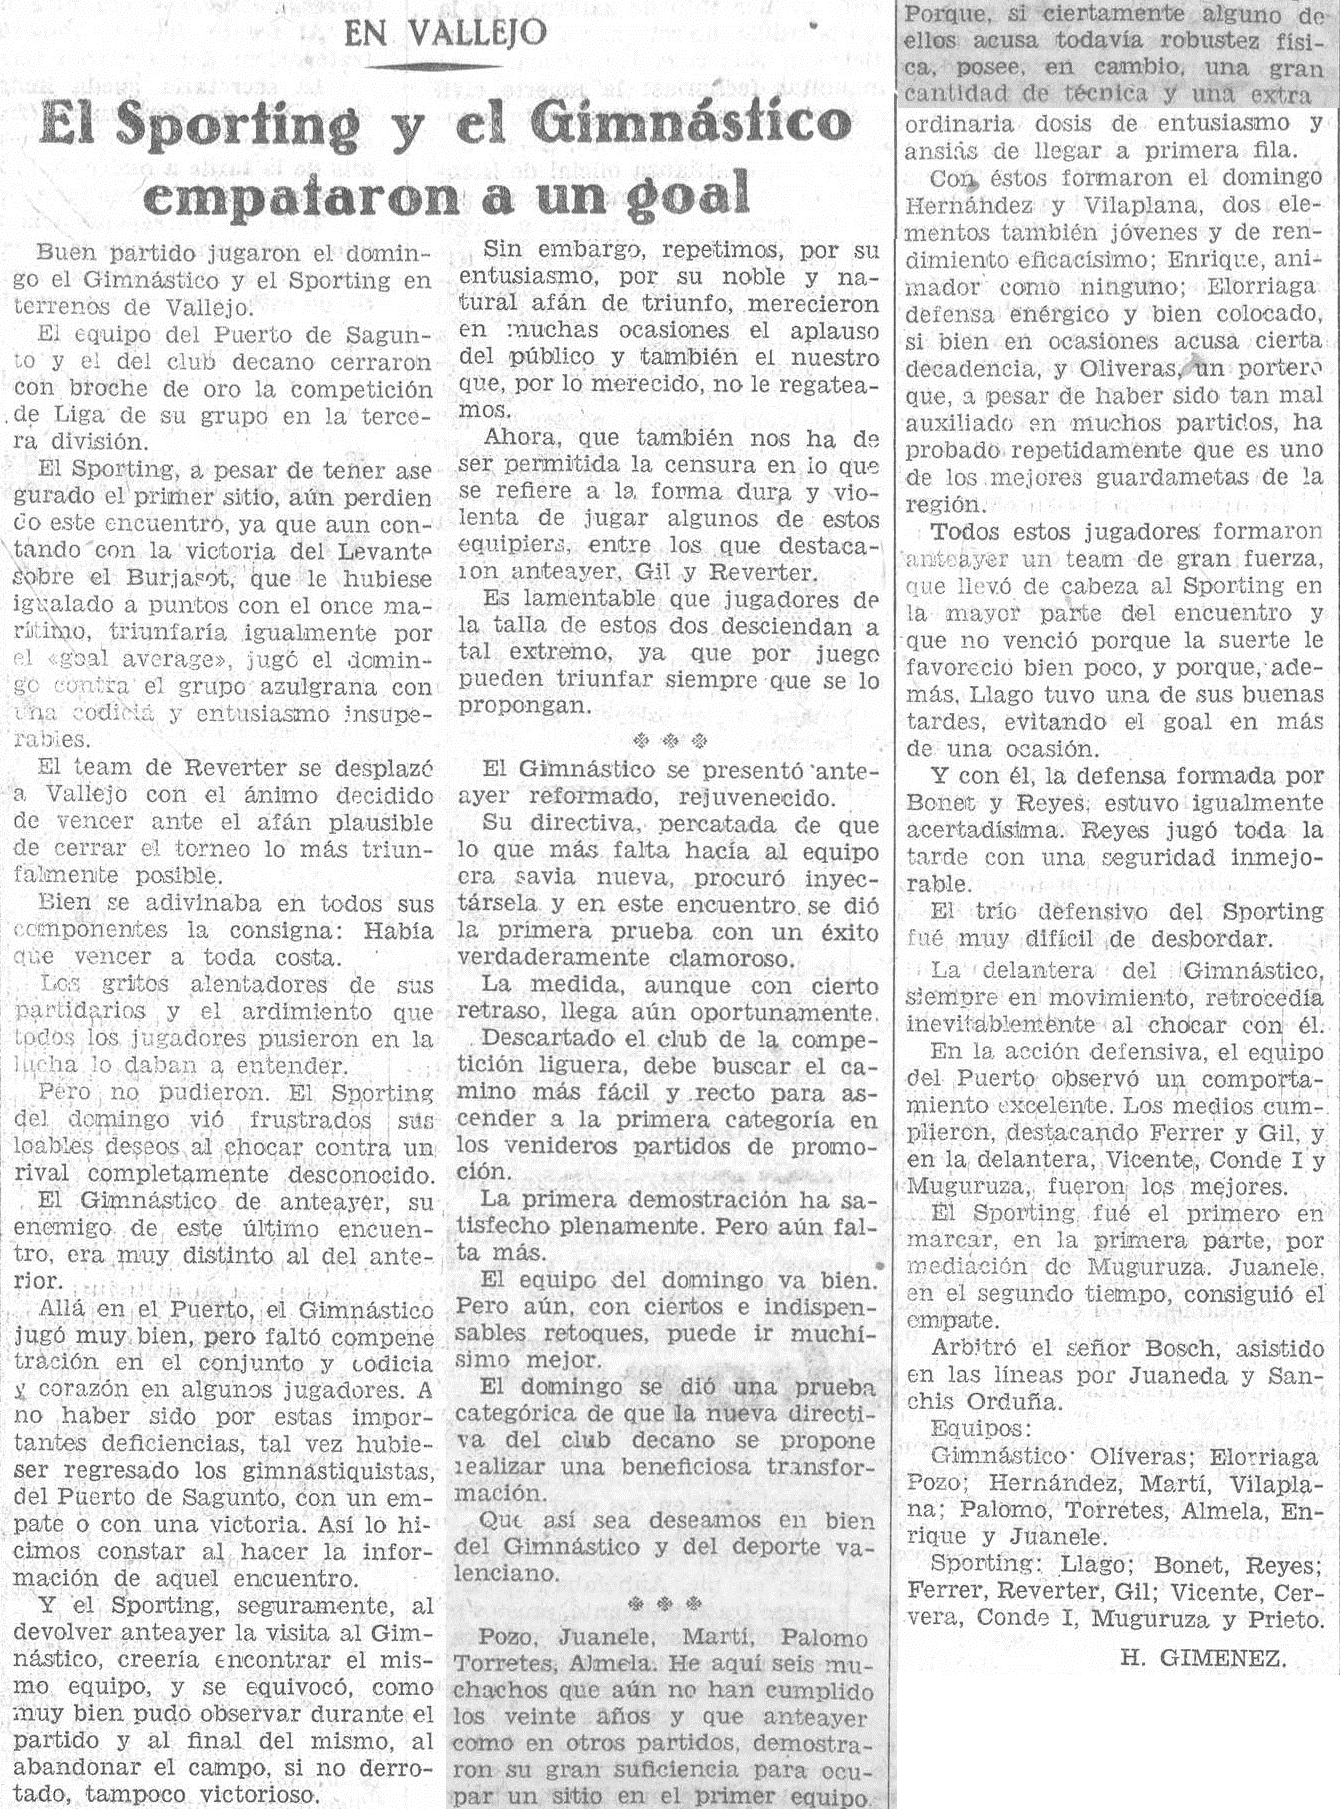 1930.02.16 (16 февраля 1939), Гимнастико - Спортинг Канет, 1-1.png